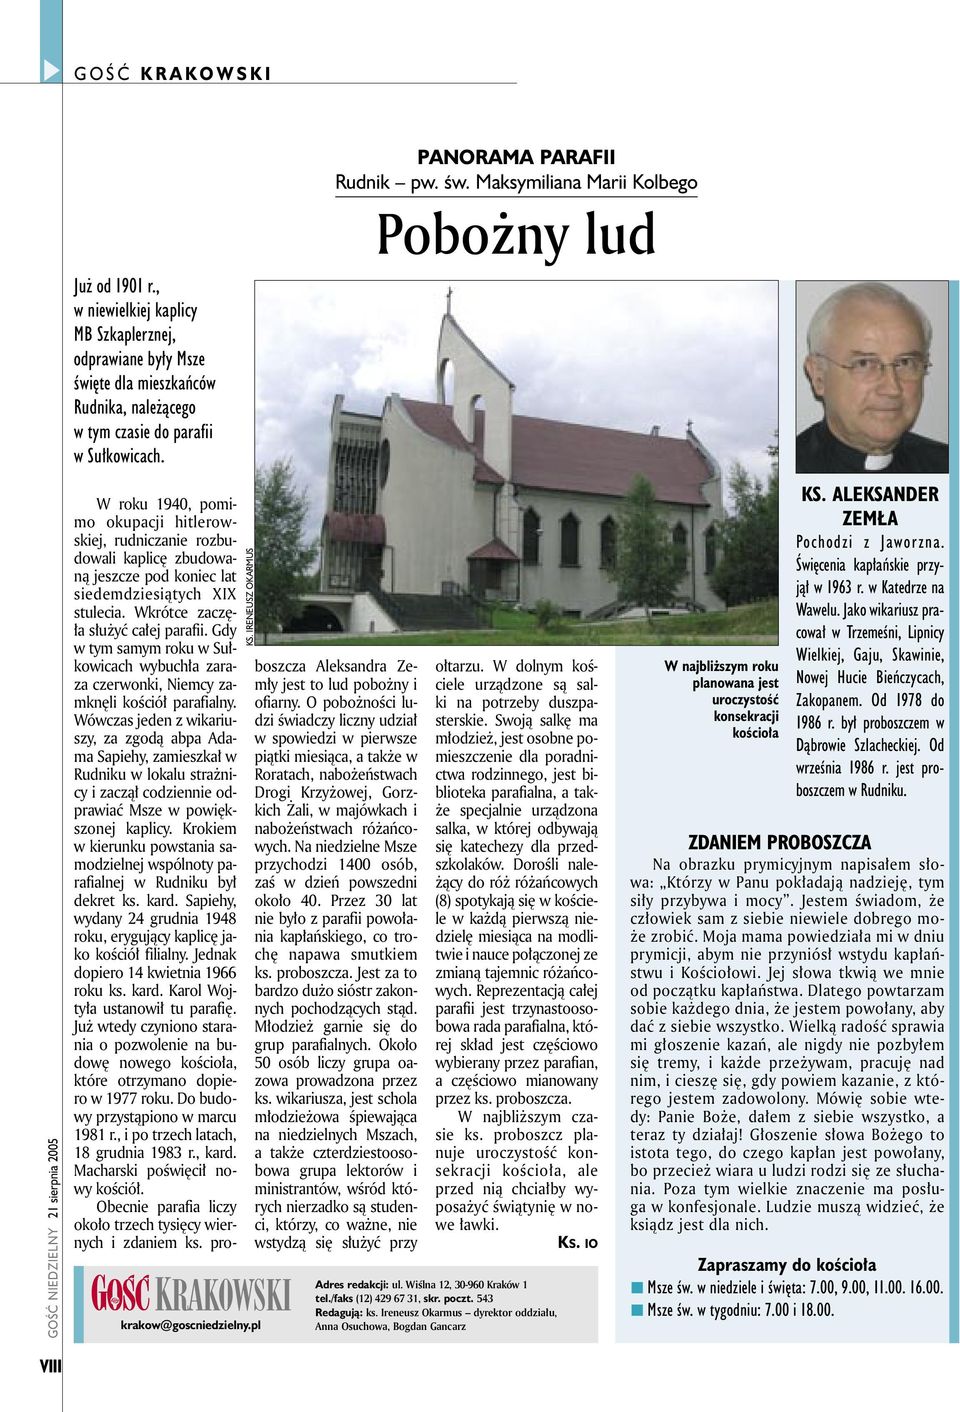 Wkrótce zaczęła służyć całej parafii. Gdy w tym samym roku w Sułkowicach wybuchła zaraza czerwonki, Niemcy zamknęli kościół parafialny.